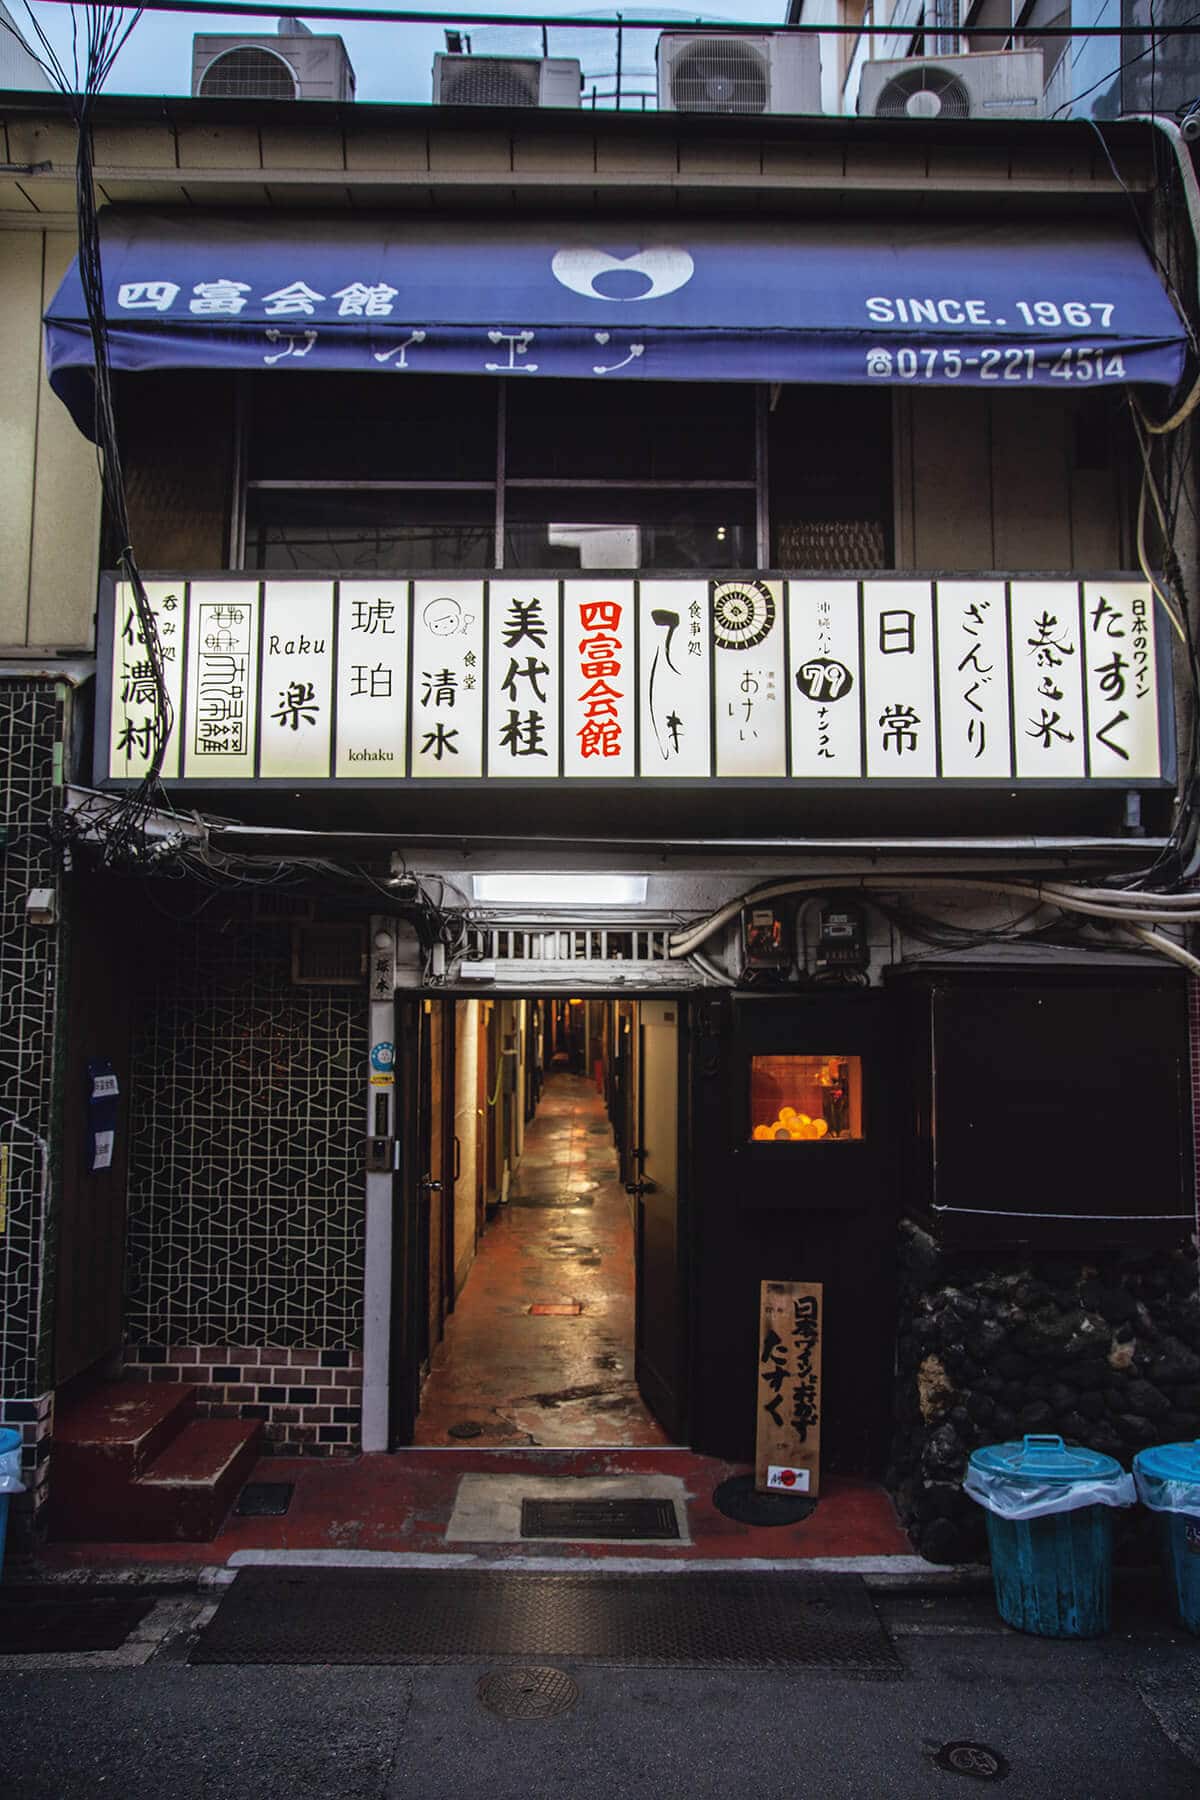 京都には “会館飲み”という酒文化がある | ブルータス| BRUTUS.jp